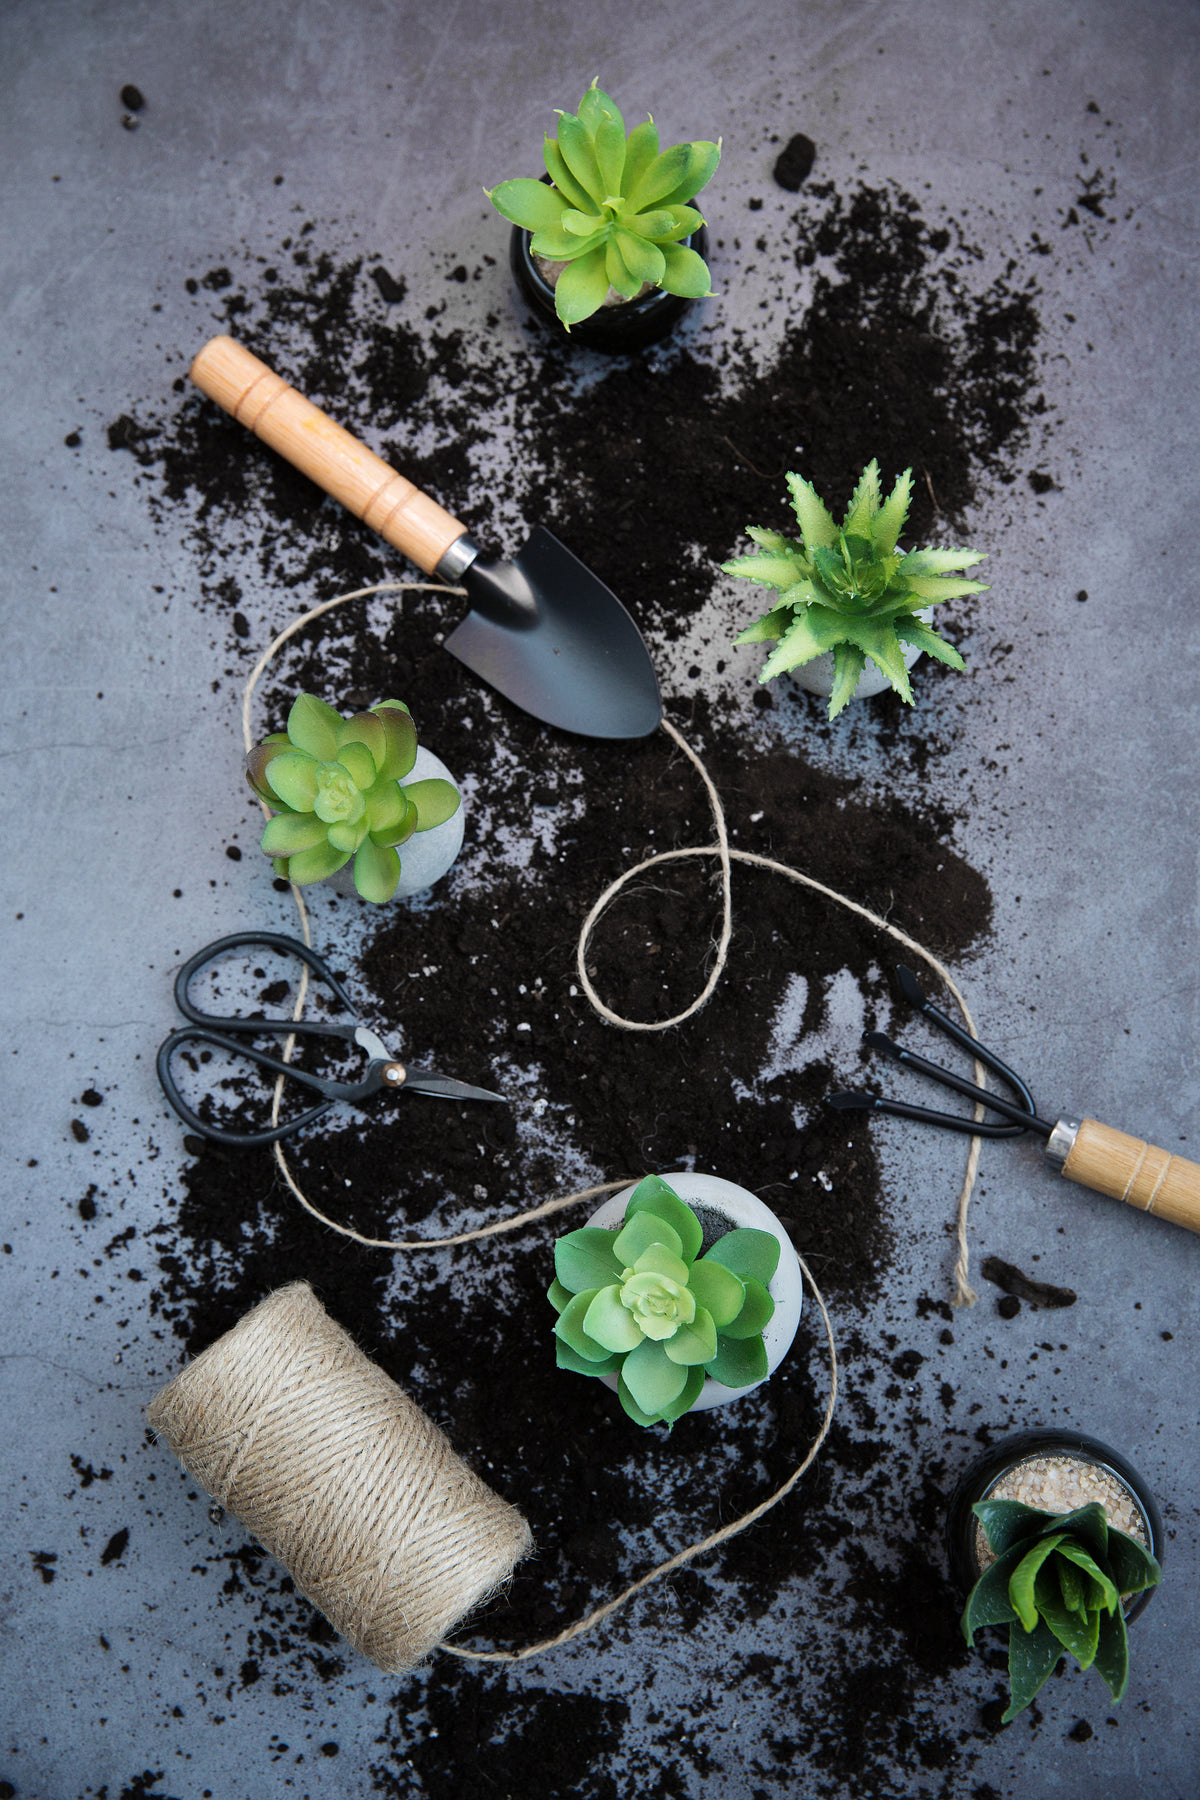 种植盆栽工具和土壤